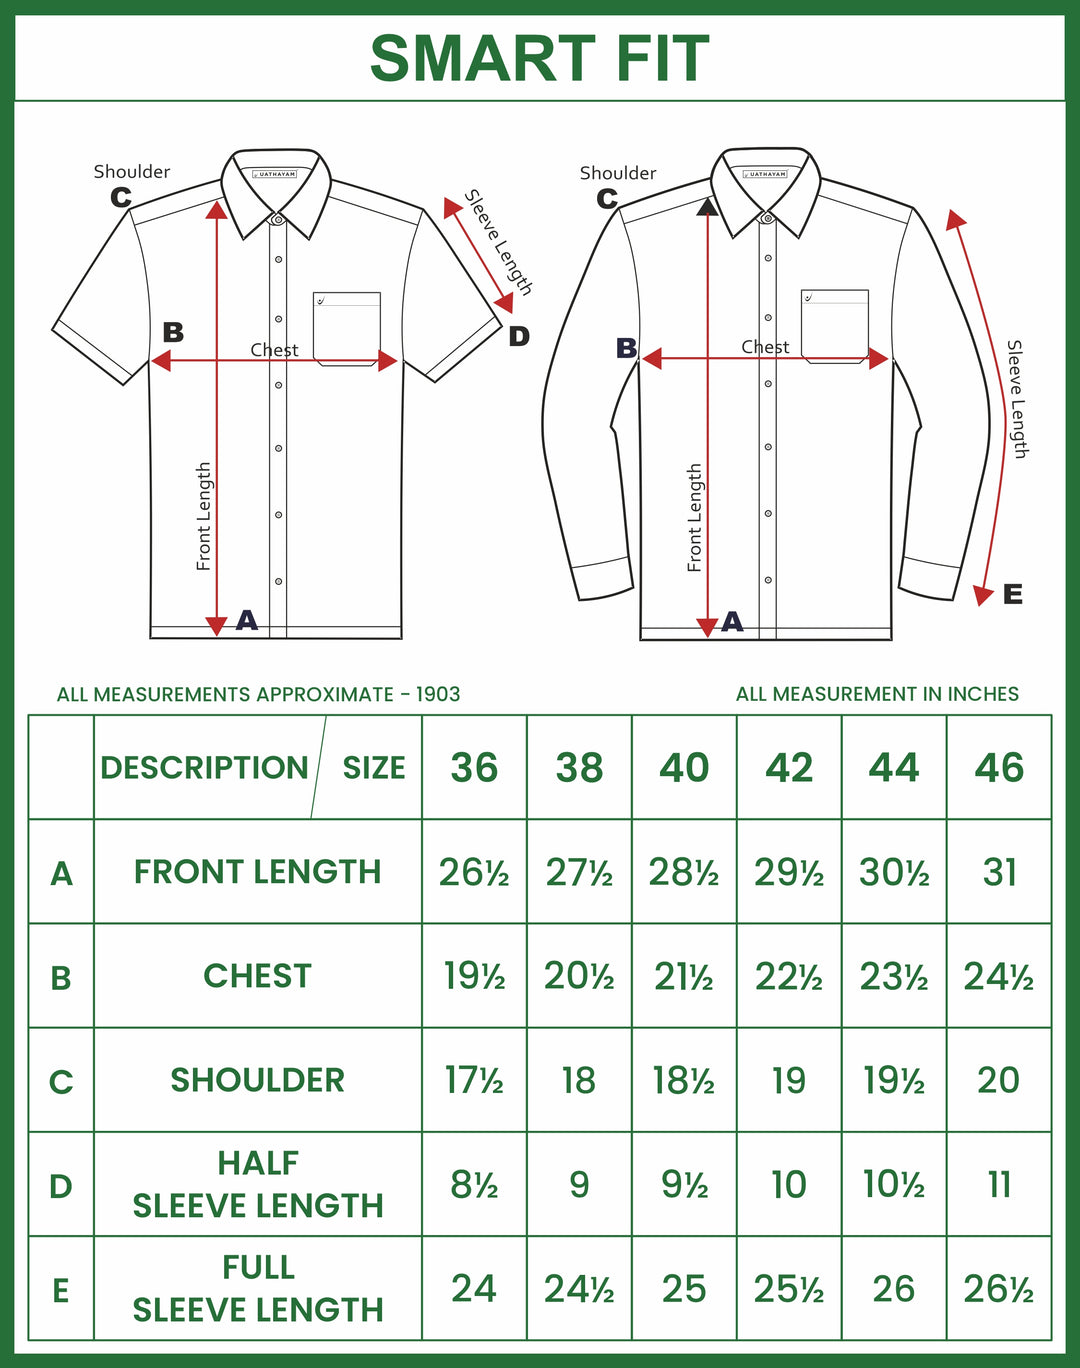 VRIKSHAM Green Color Silk Shirt & Matching Dhoti 2 in 1 Set Full Sleeve For Men- 15804